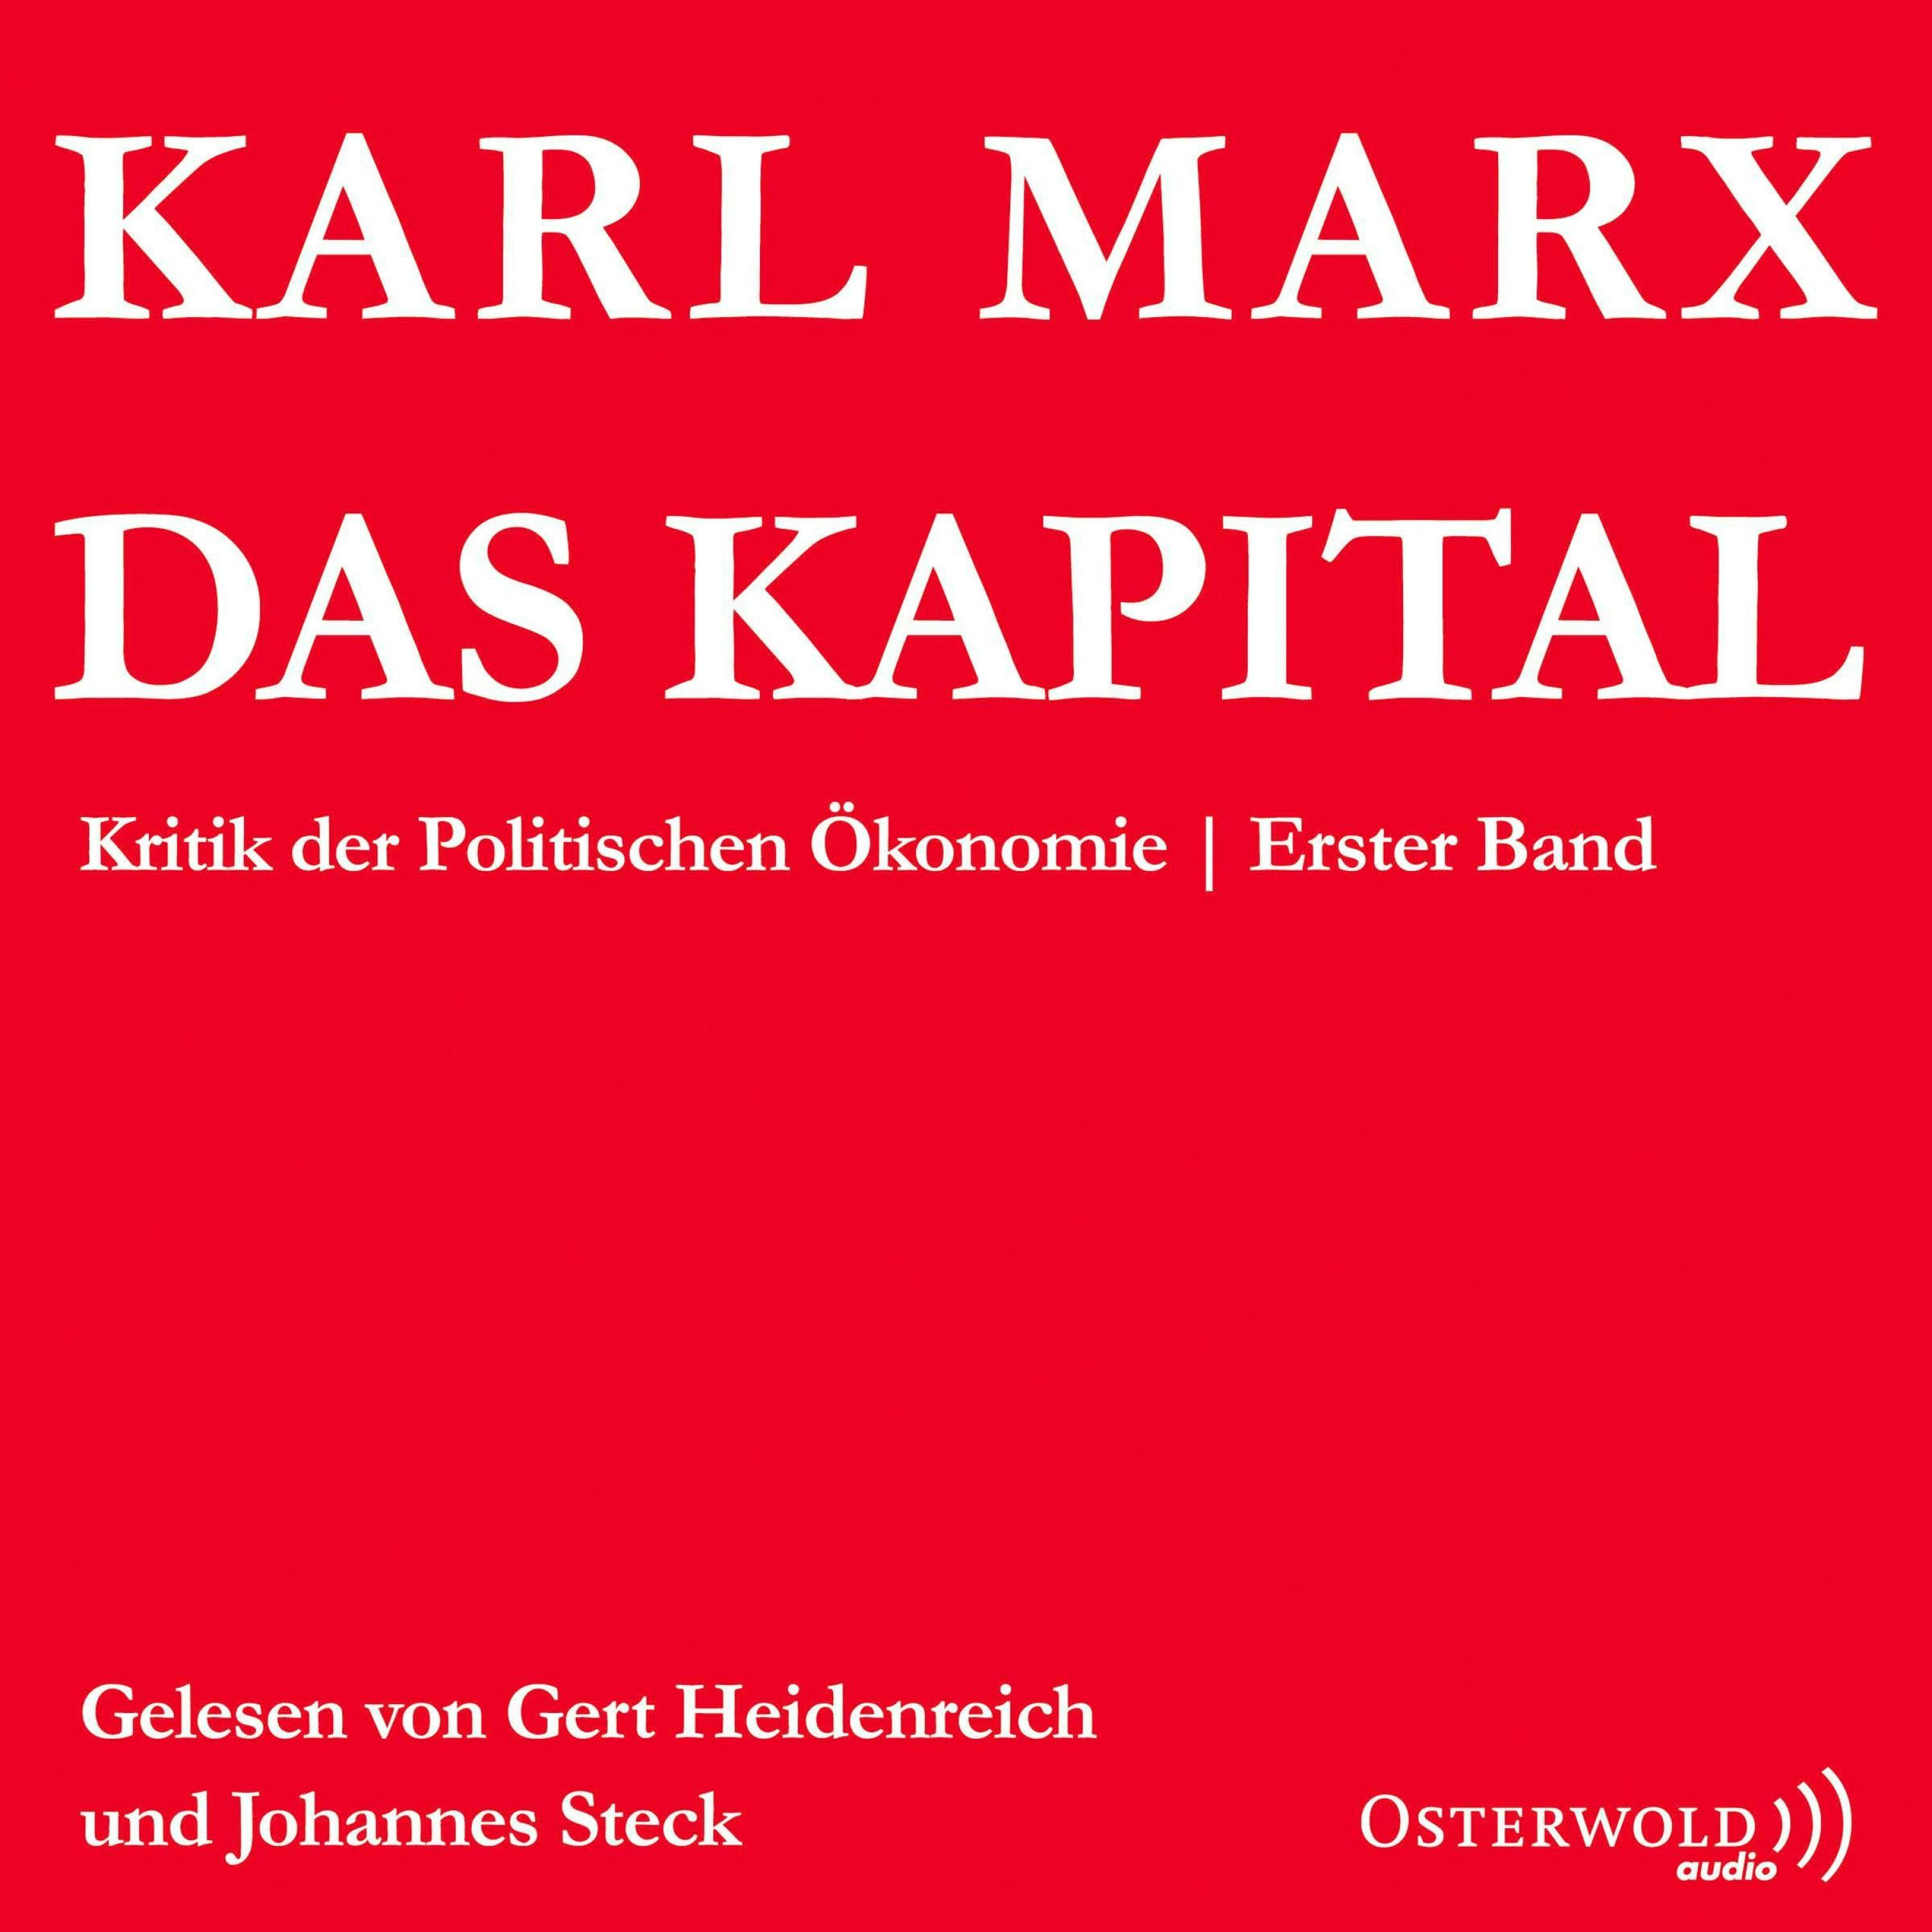 Das Kapital: Kritik der Politischen Ökonomie - Karl Marx